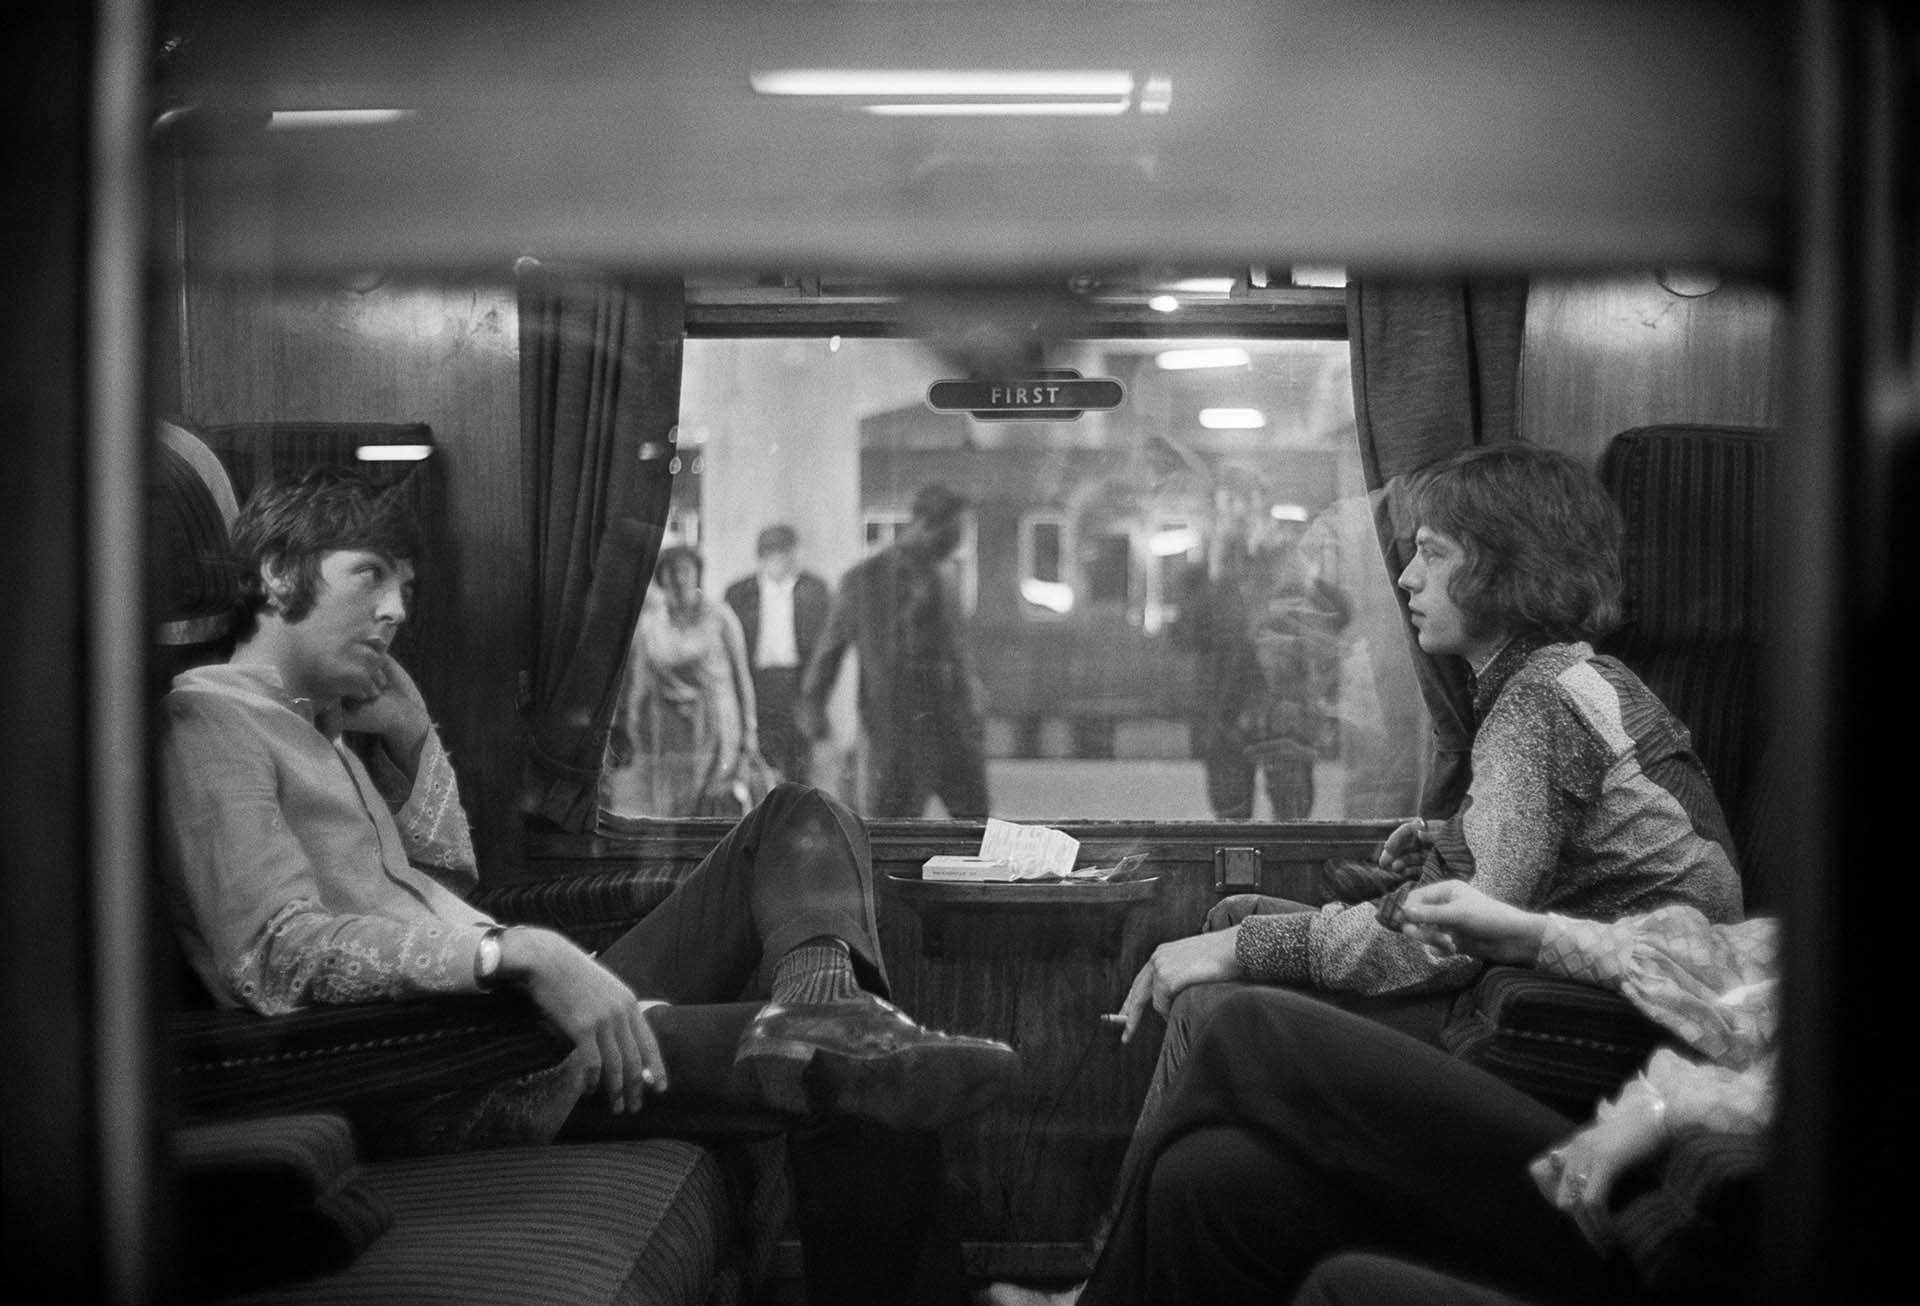 25 de agosto de 1967: Paul McCartney de los Beatles y Mick Jagger de los Rolling Stones se sientan uno frente al otro en un tren en la estación de Euston, esperando la salida a Bangor. (Foto de Victor Blackman/Express/Getty Images)
